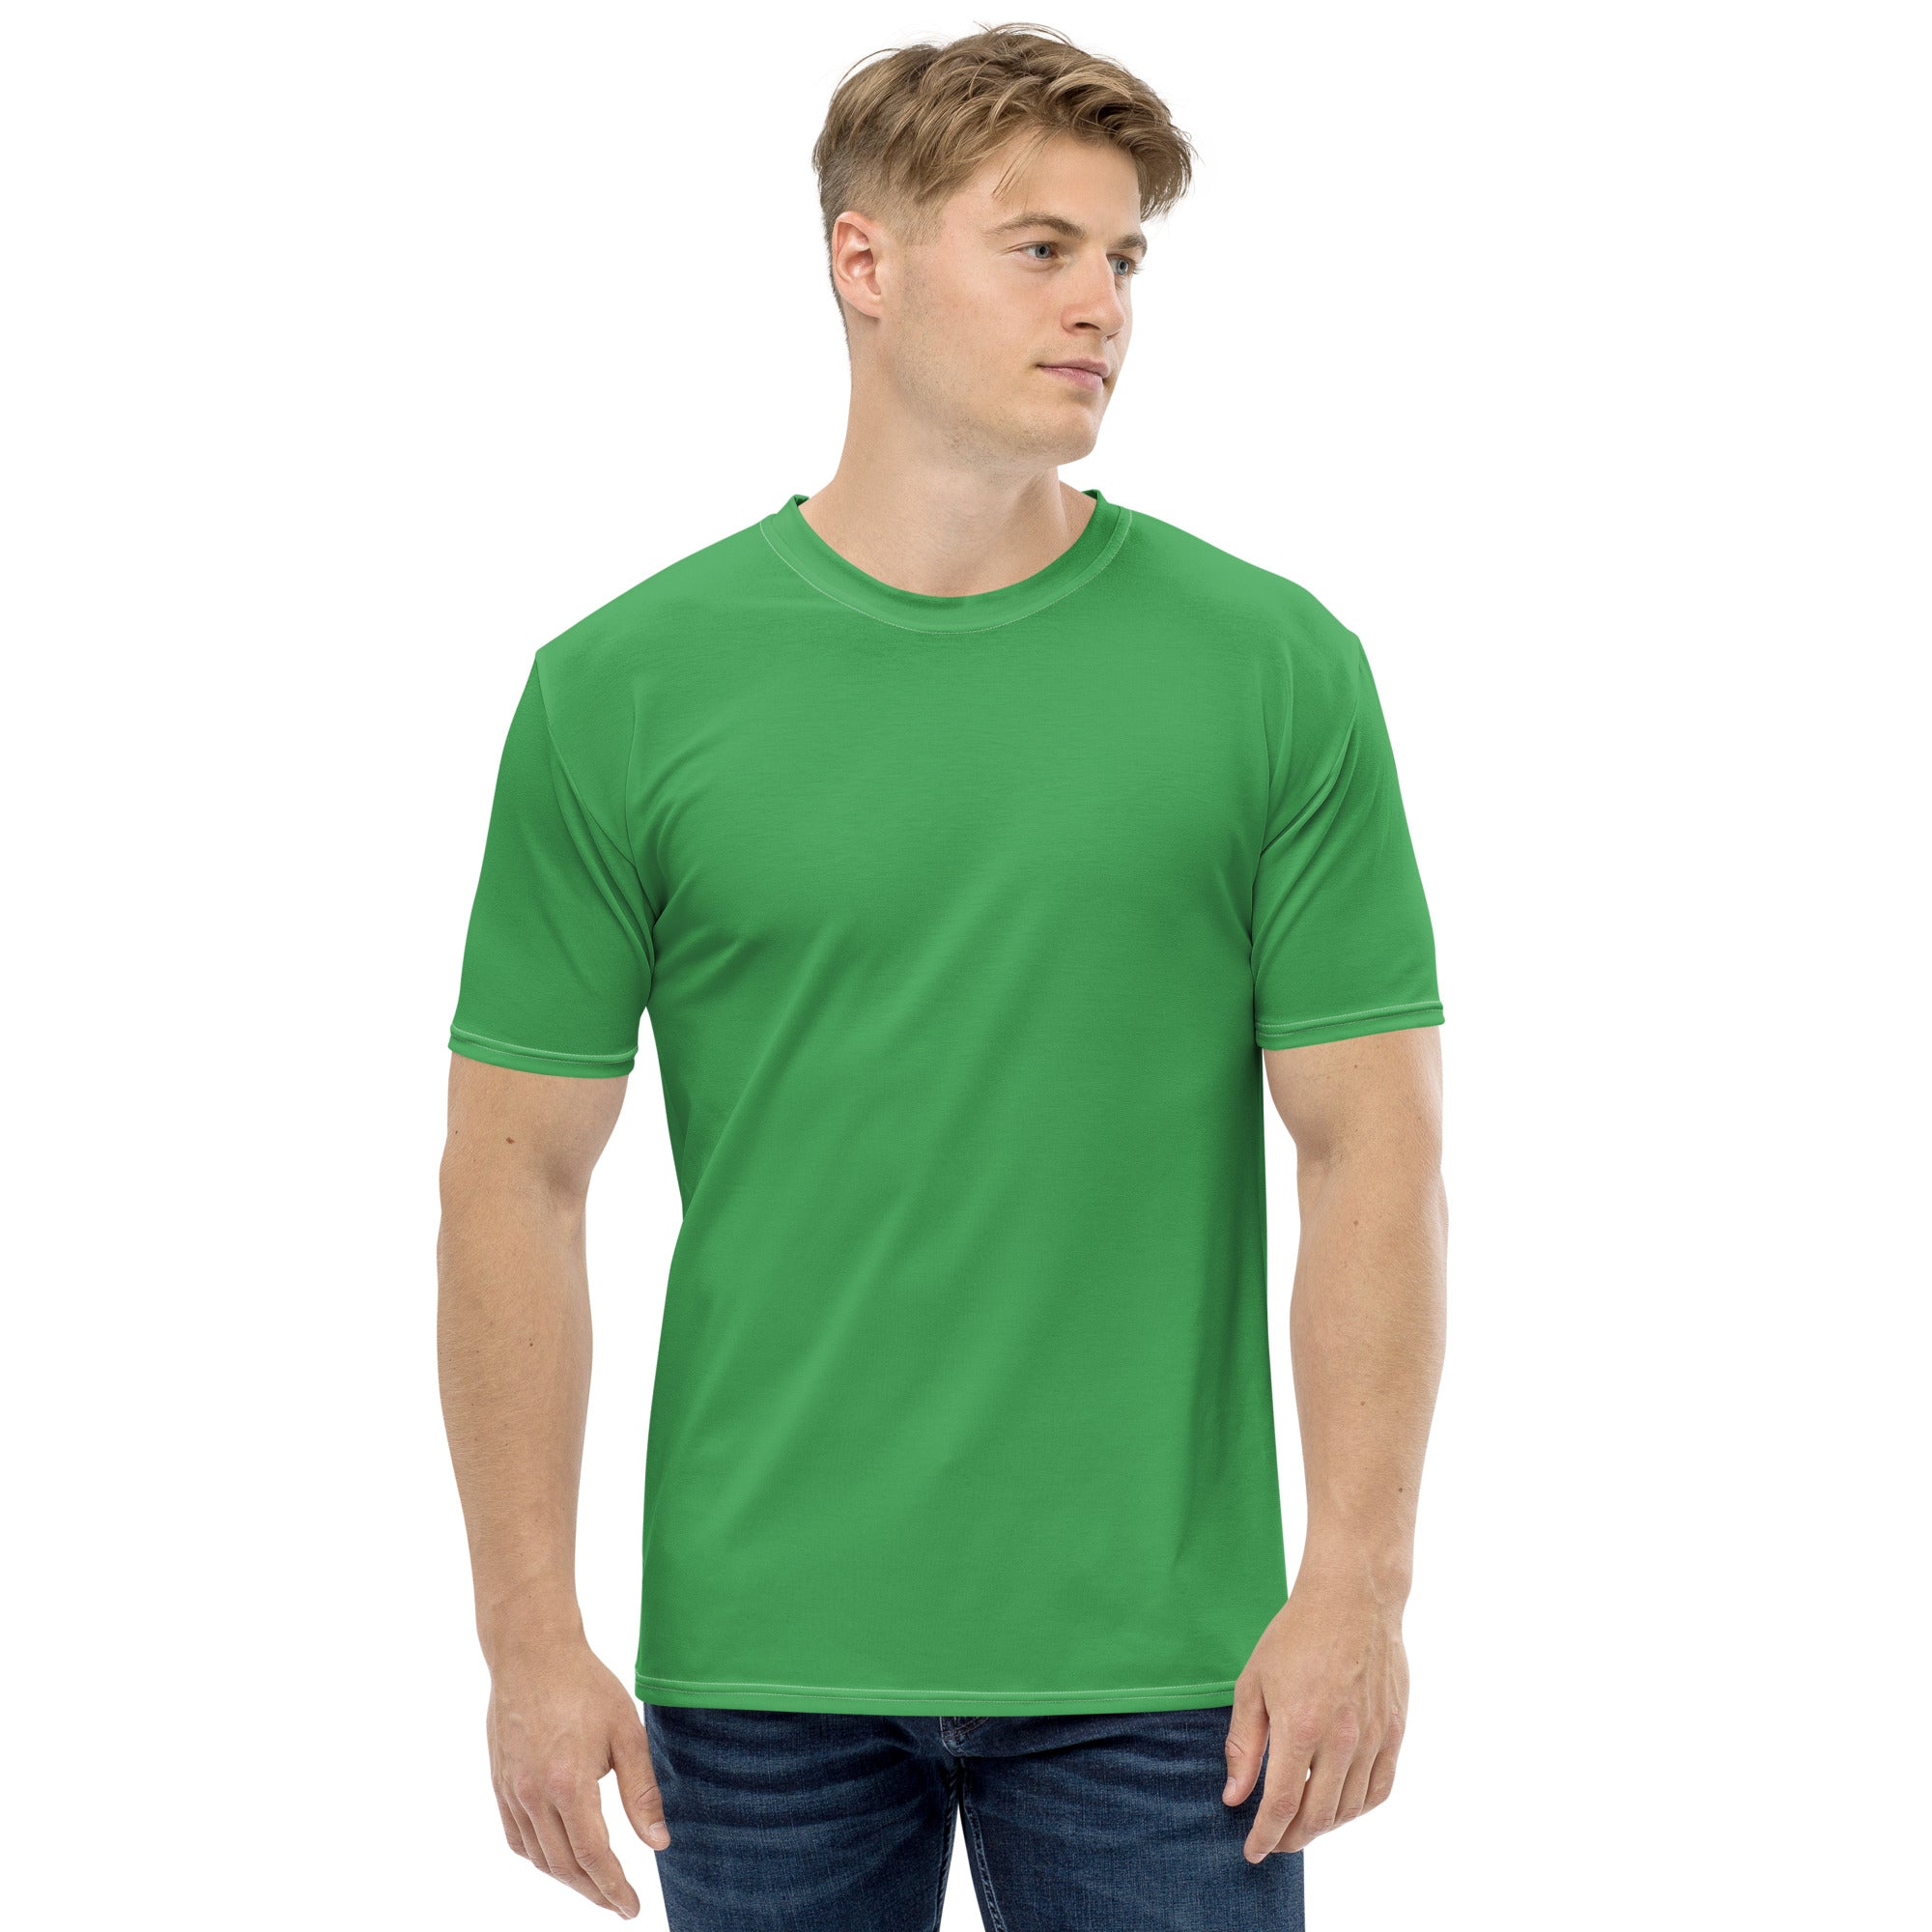 Clover Green Men's T-shirt